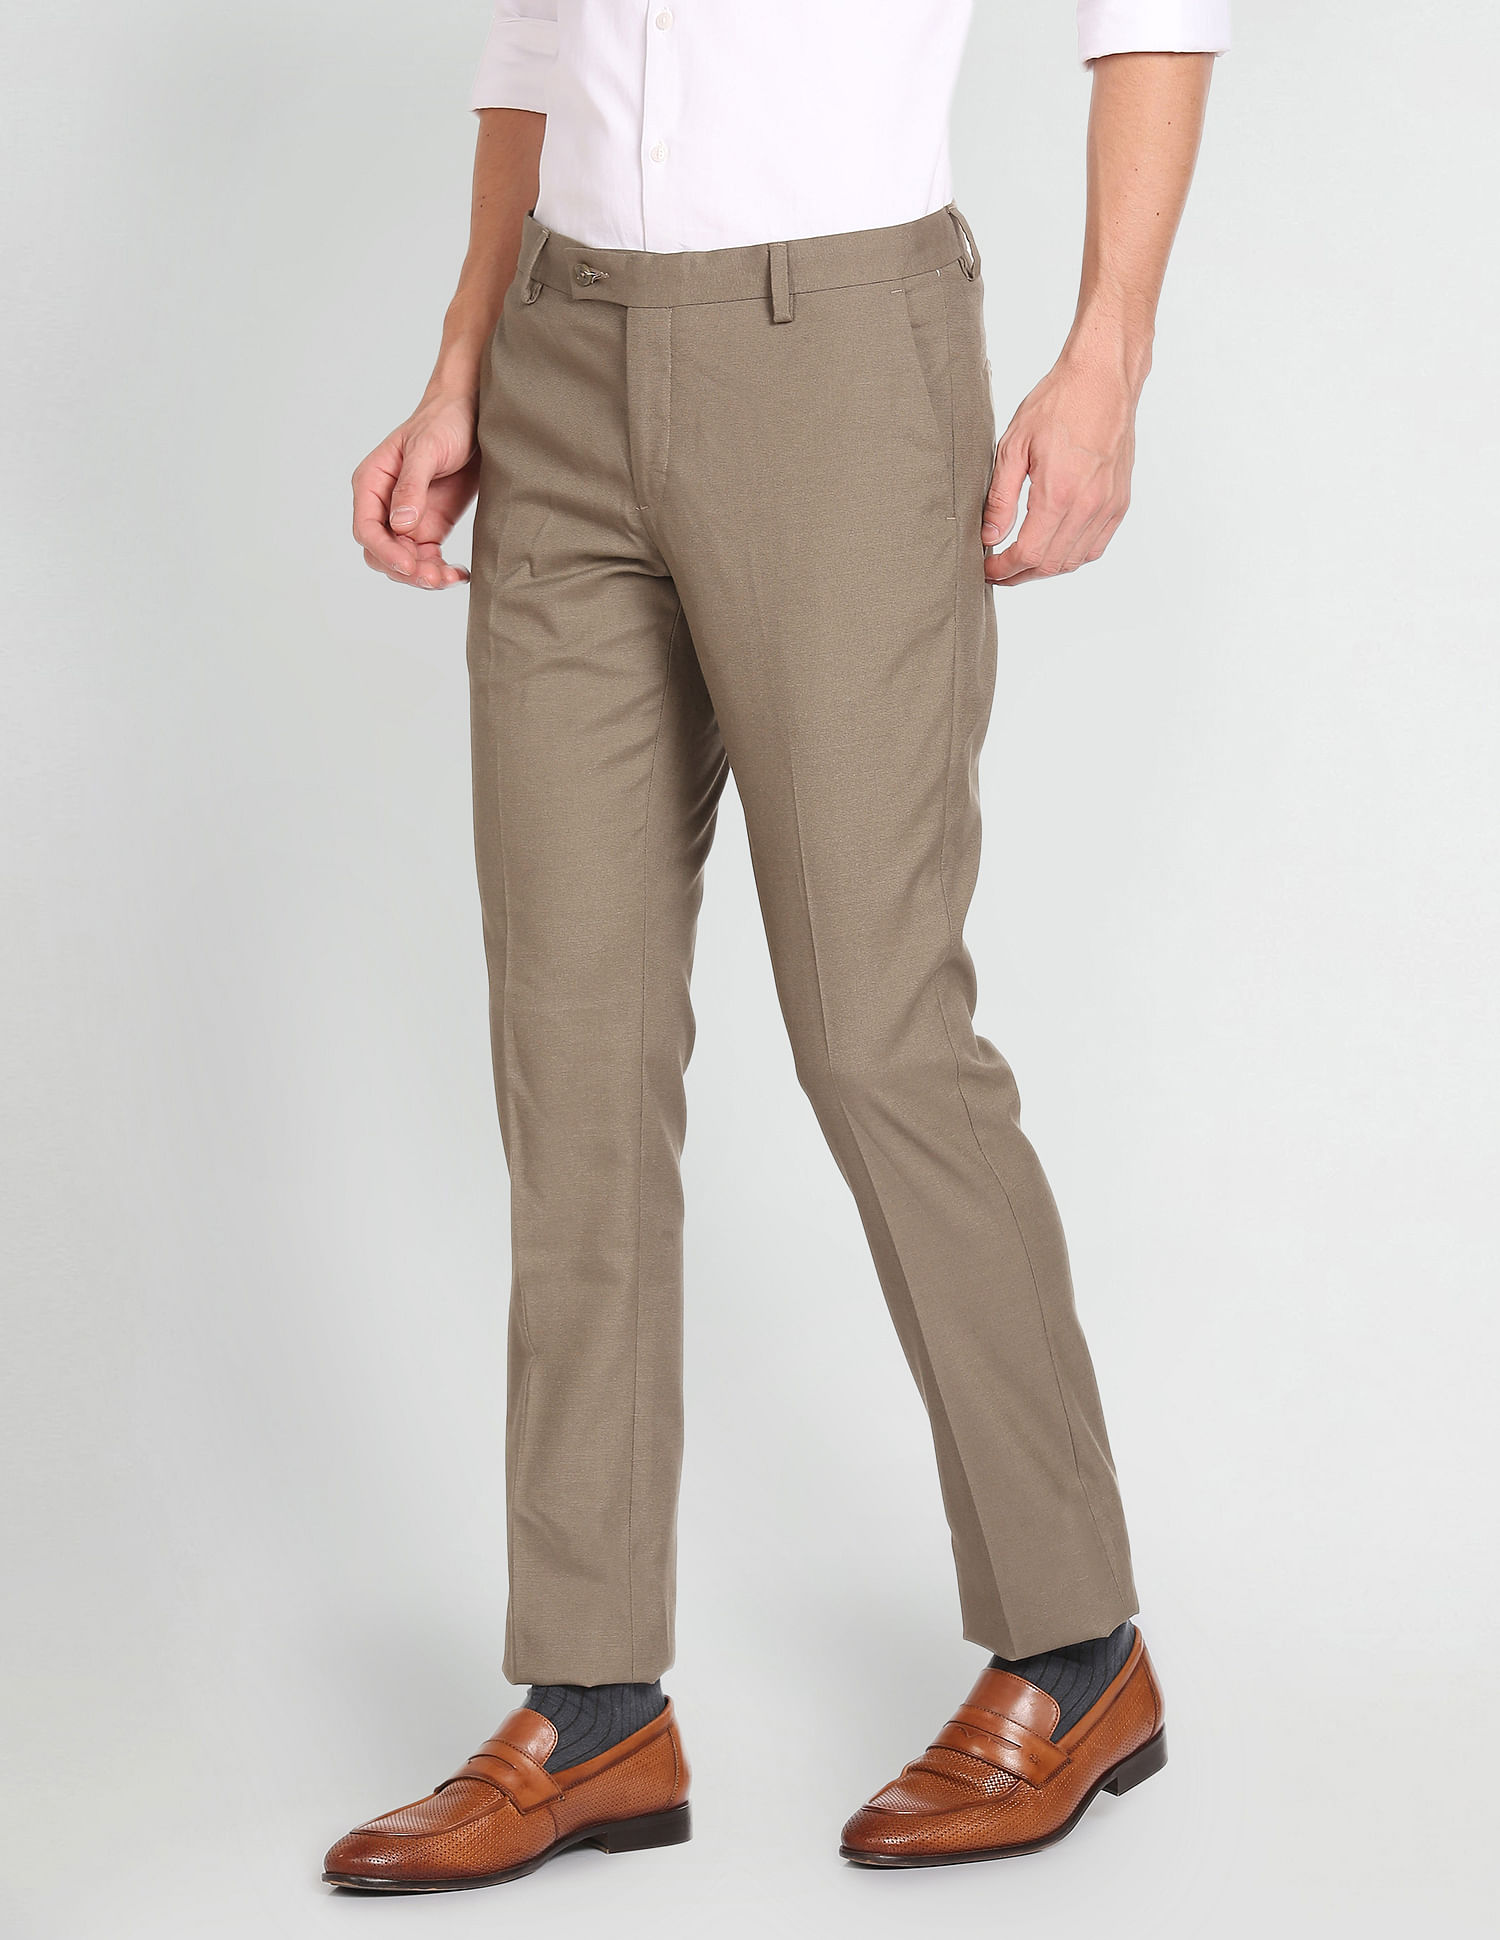 Arrow Khaki Trousers - Buy Arrow Khaki Trousers online in India